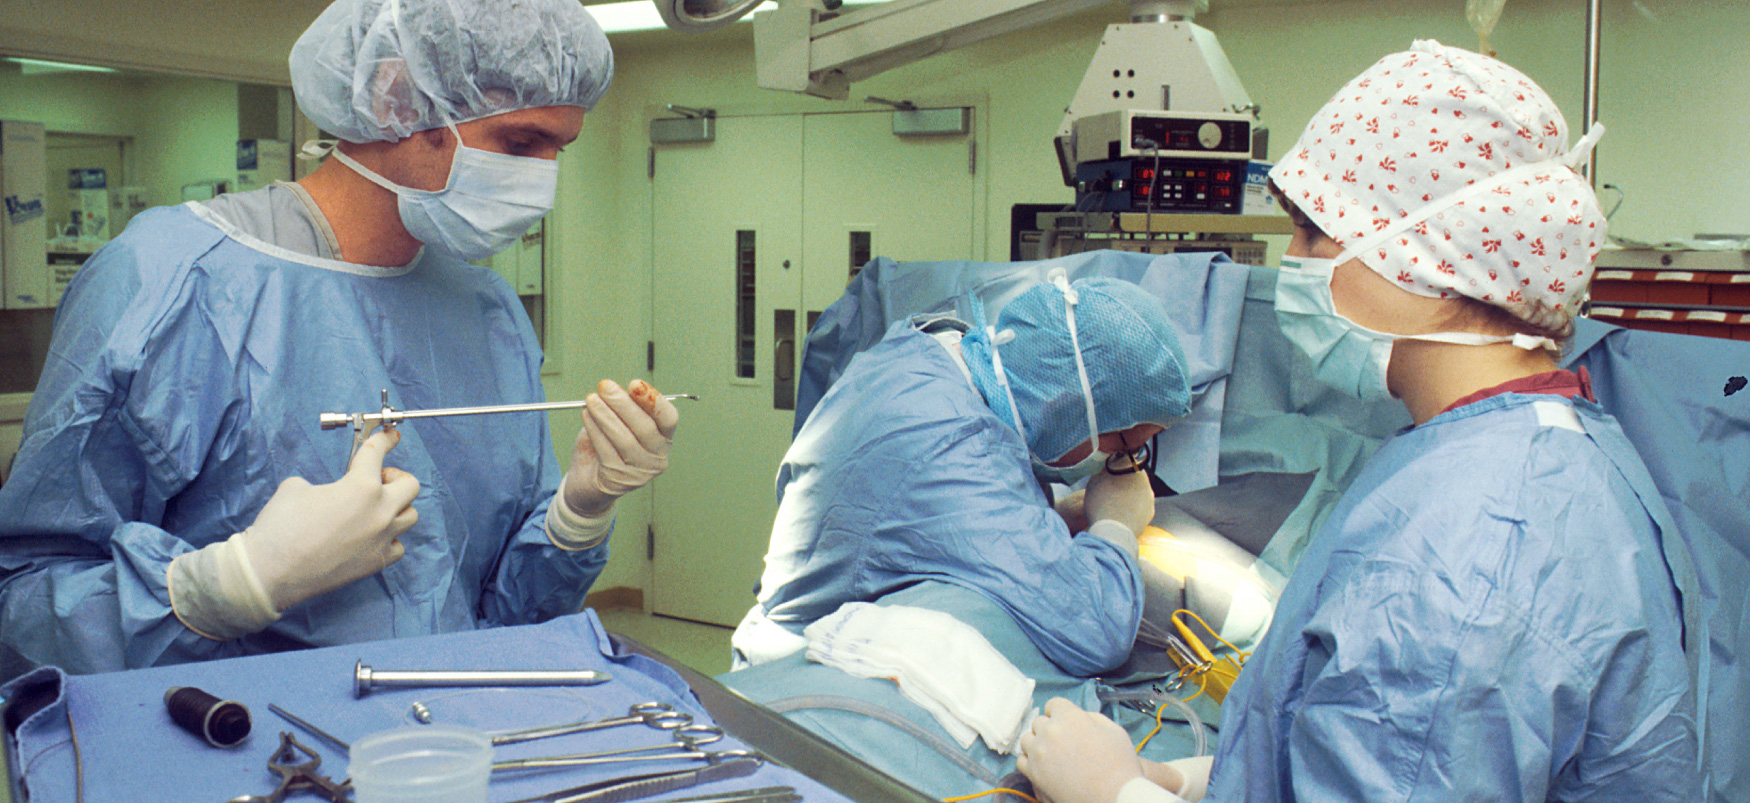 Trois professionnels de santé équipés d'équipements de protection individuelle préparent des instruments dans une salle d'opération.